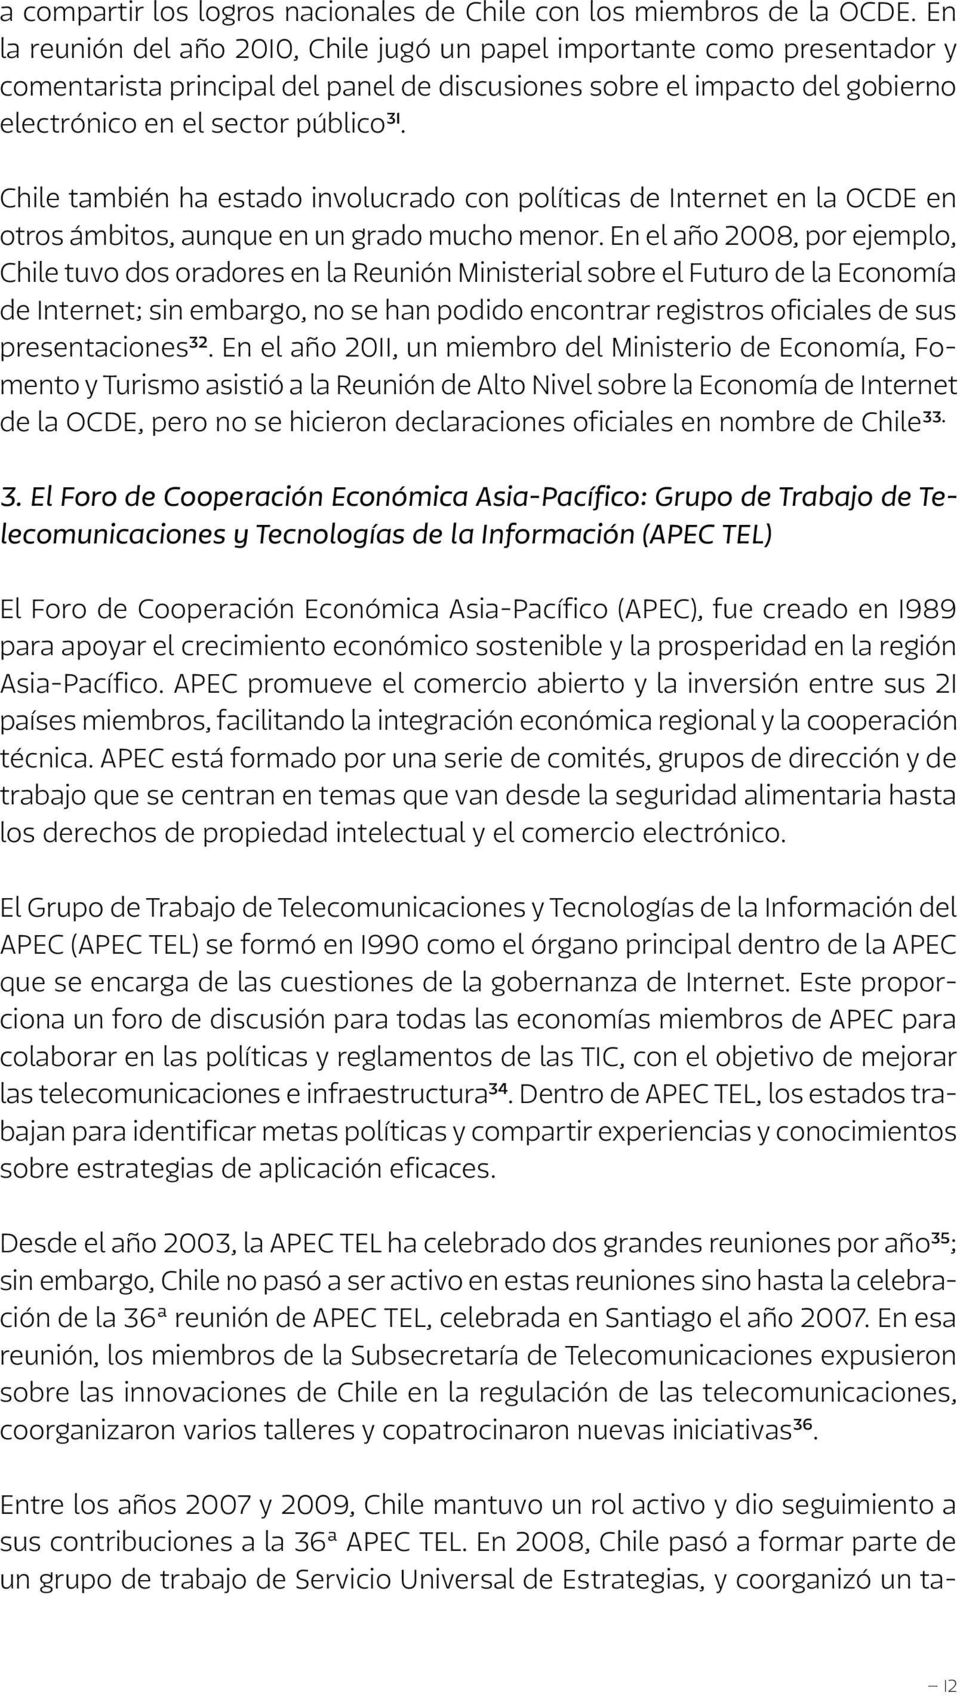 Chile también ha estado involucrado con políticas de Internet en la OCDE en otros ámbitos, aunque en un grado mucho menor.